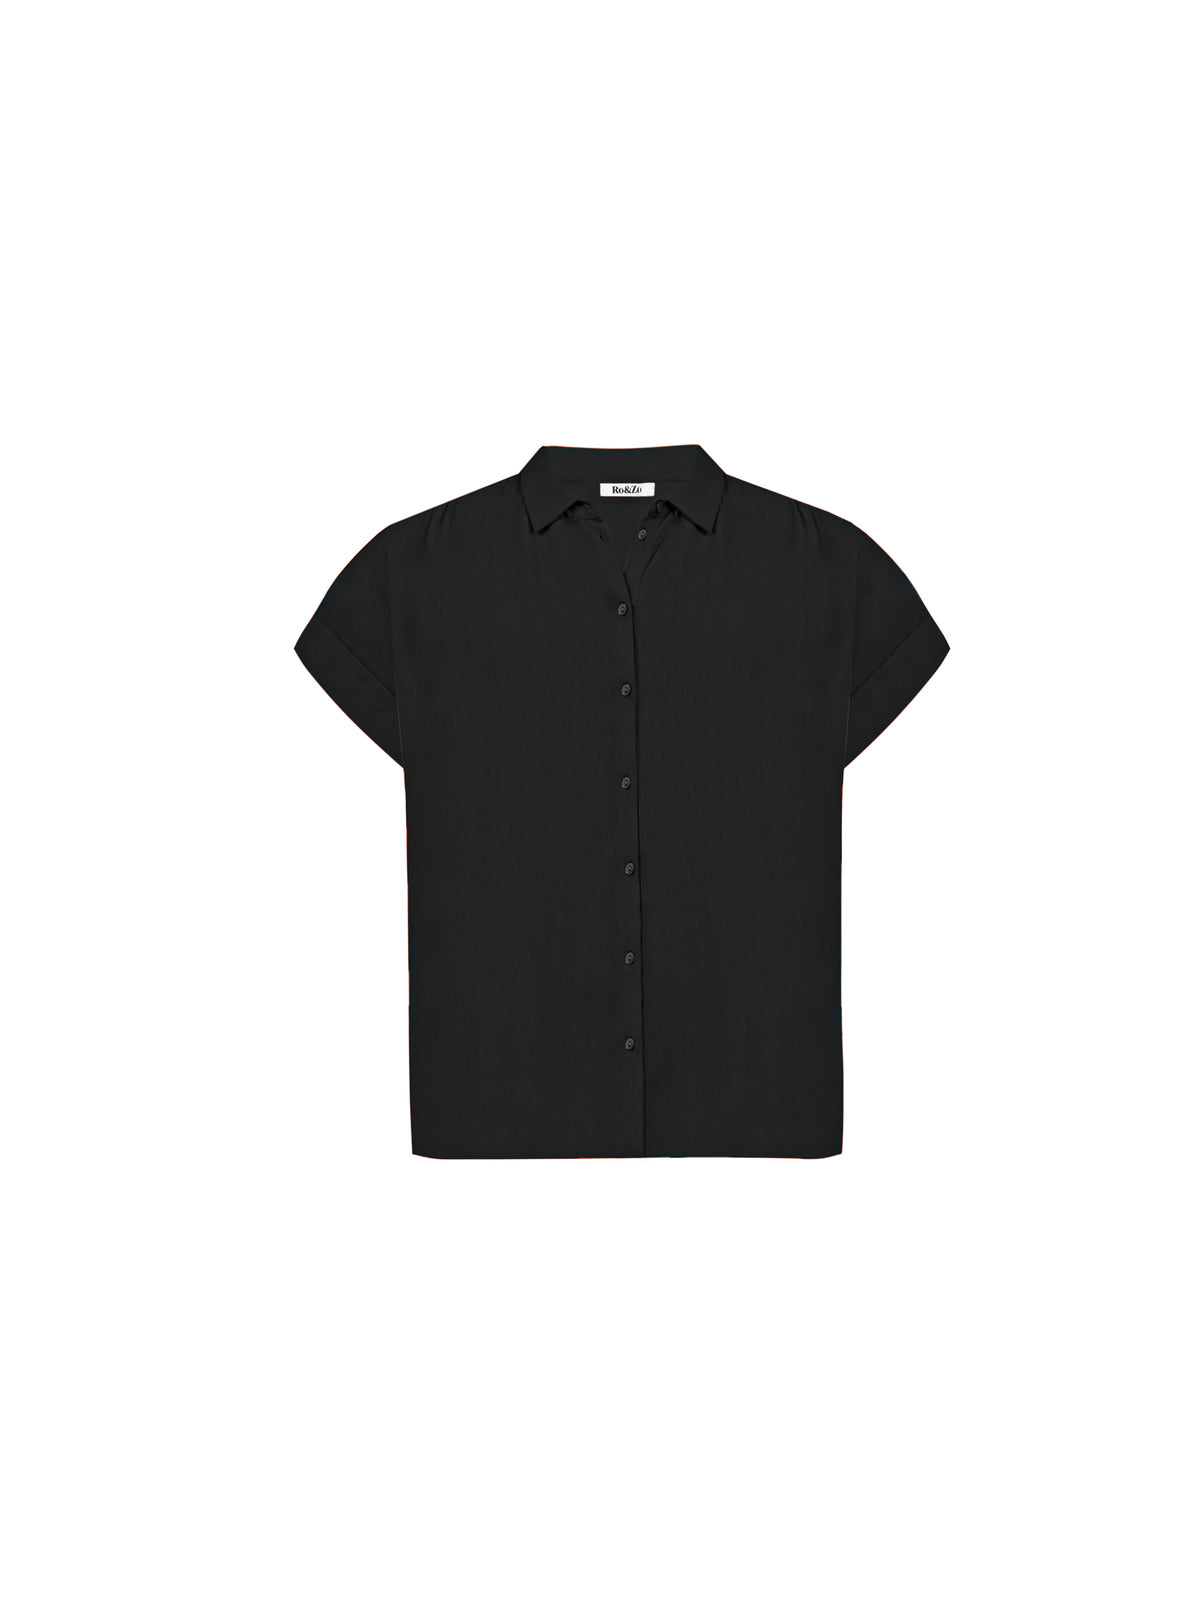 Black Crinkle Grown On Sleeve Shirt